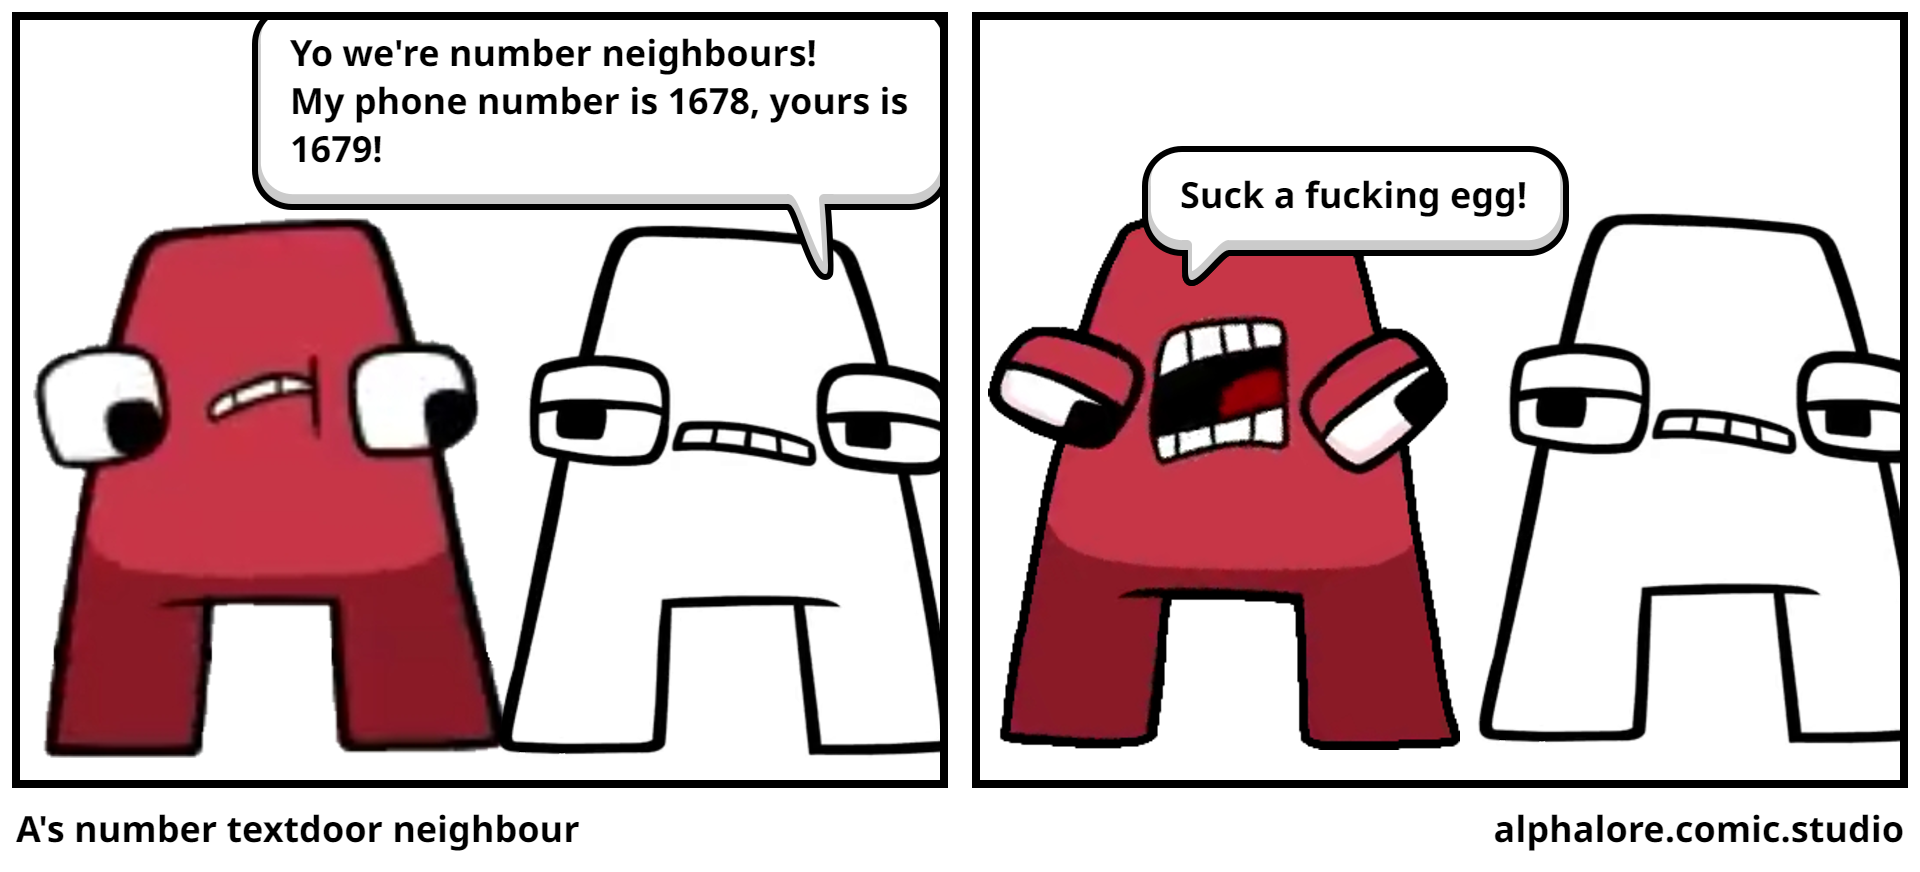 A's number textdoor neighbour